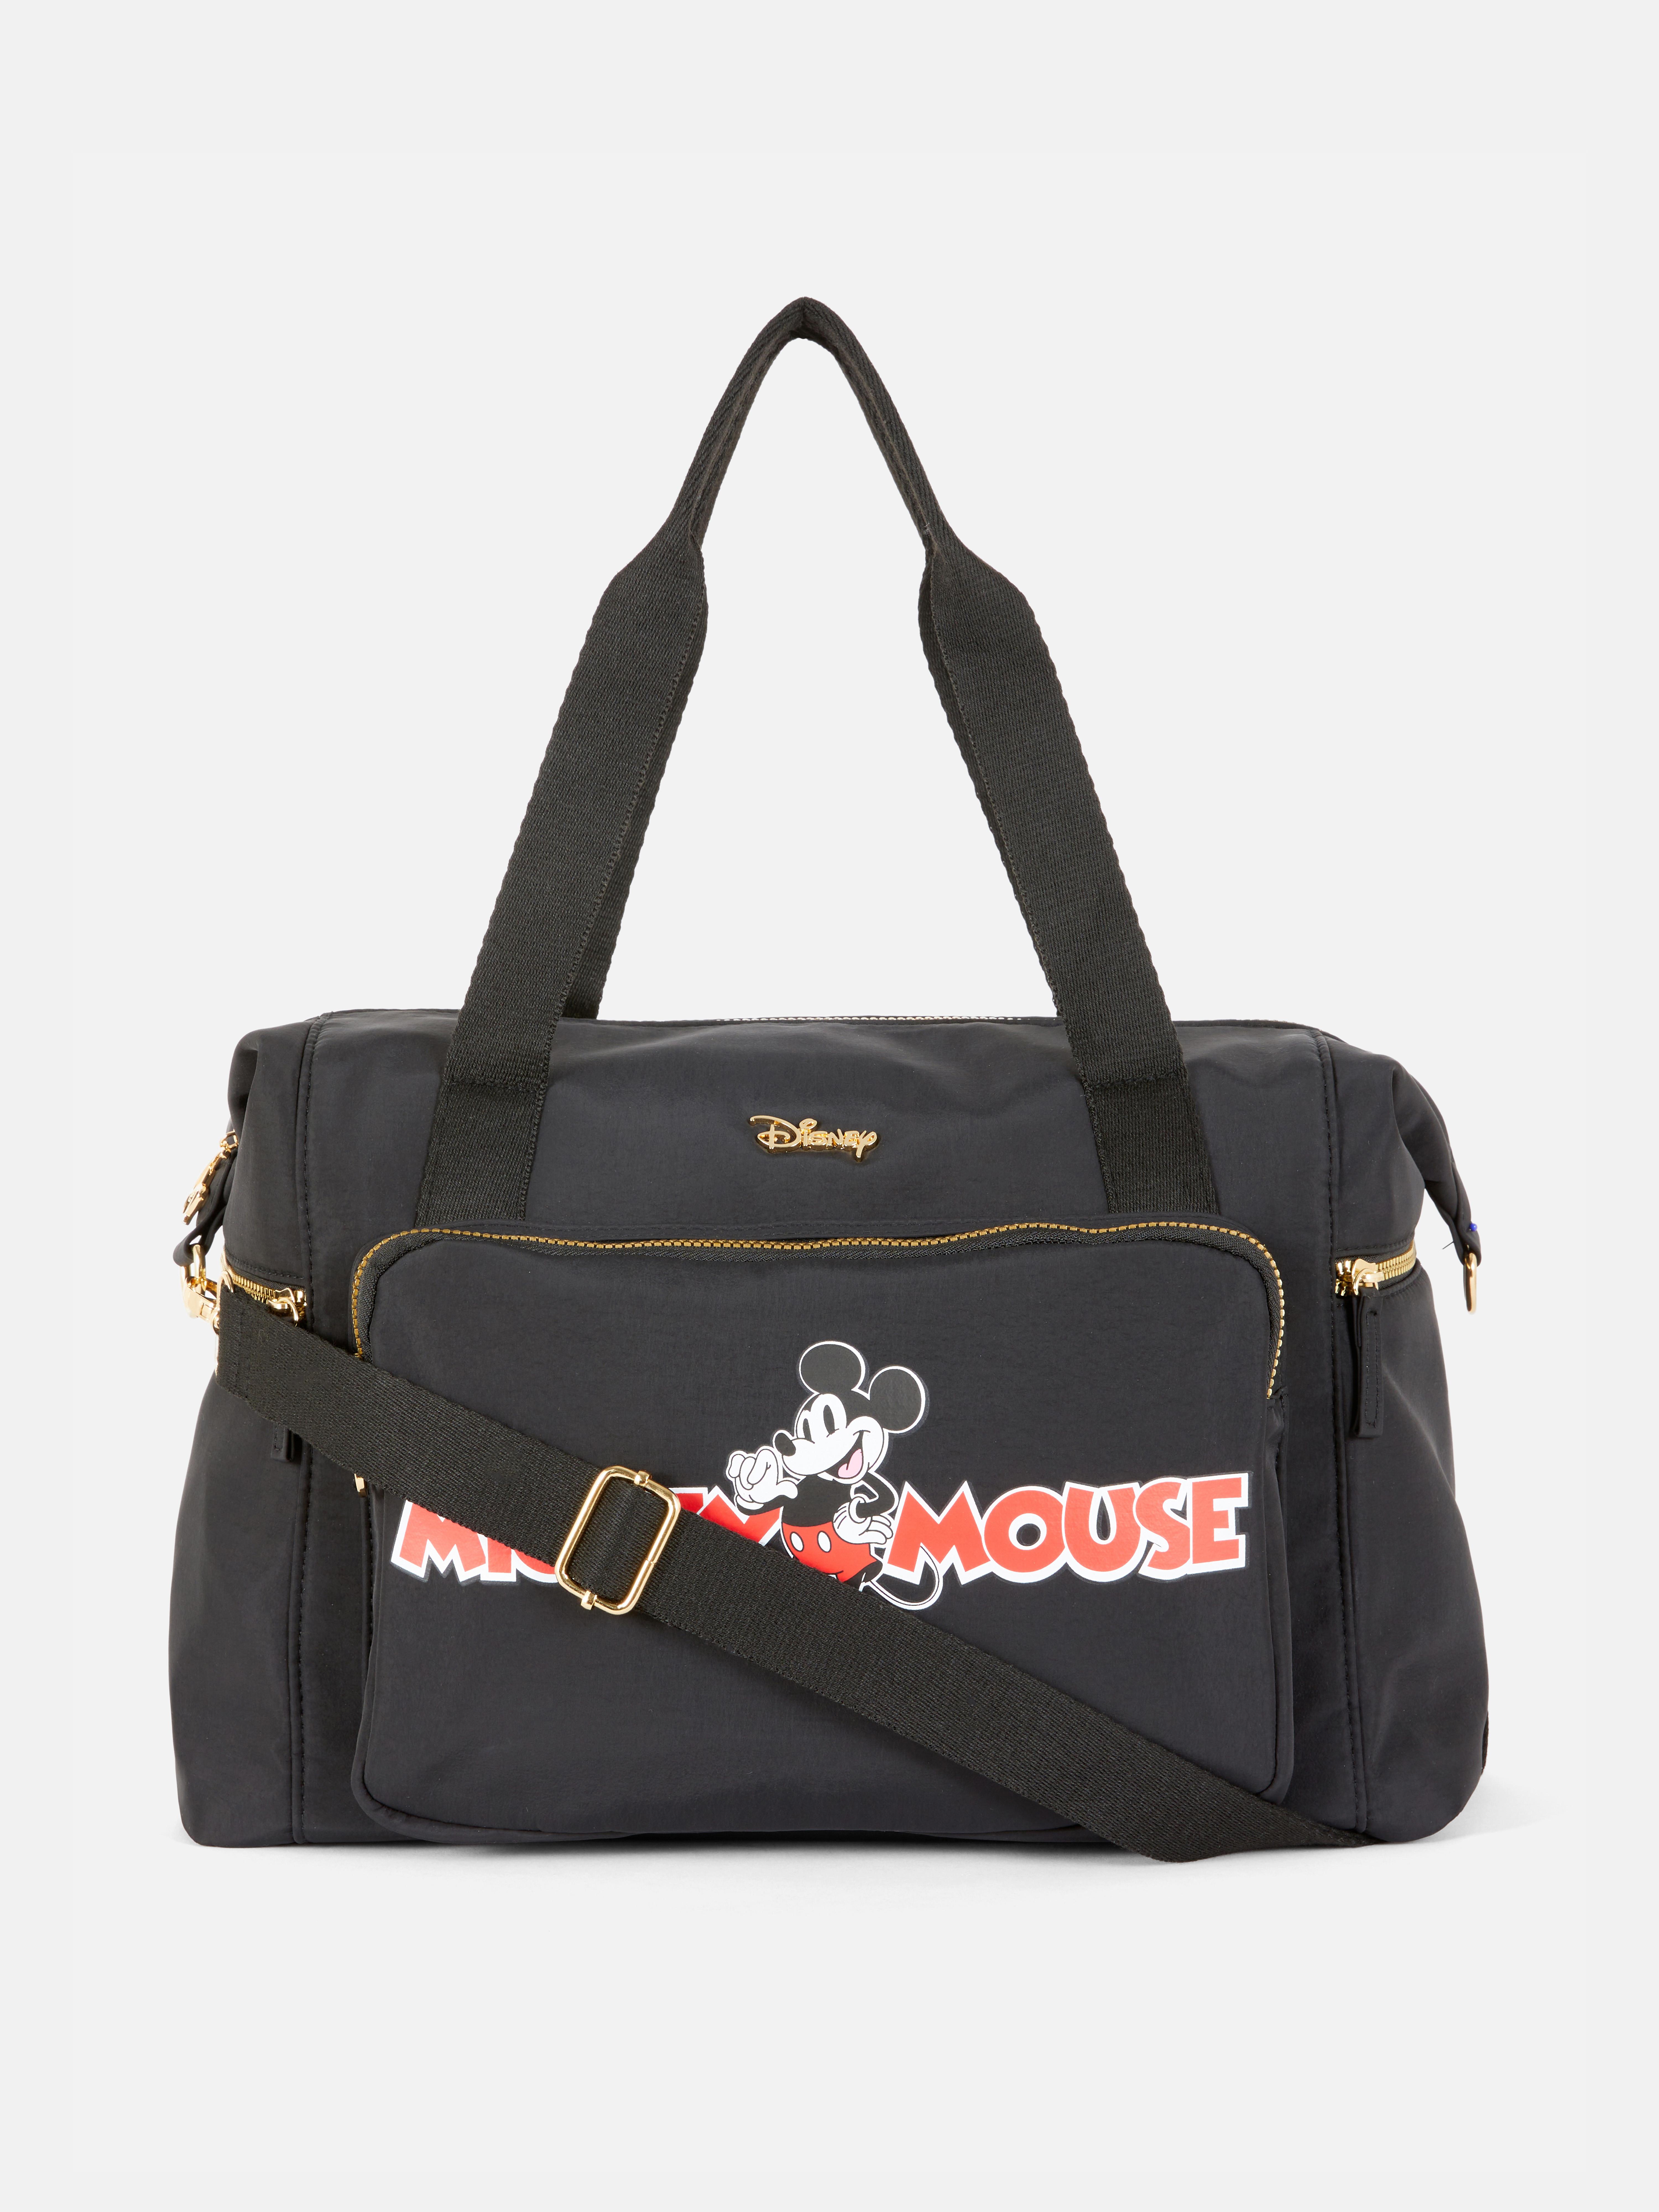 Disney’s Mickey Mouse Printed Weekender Bag